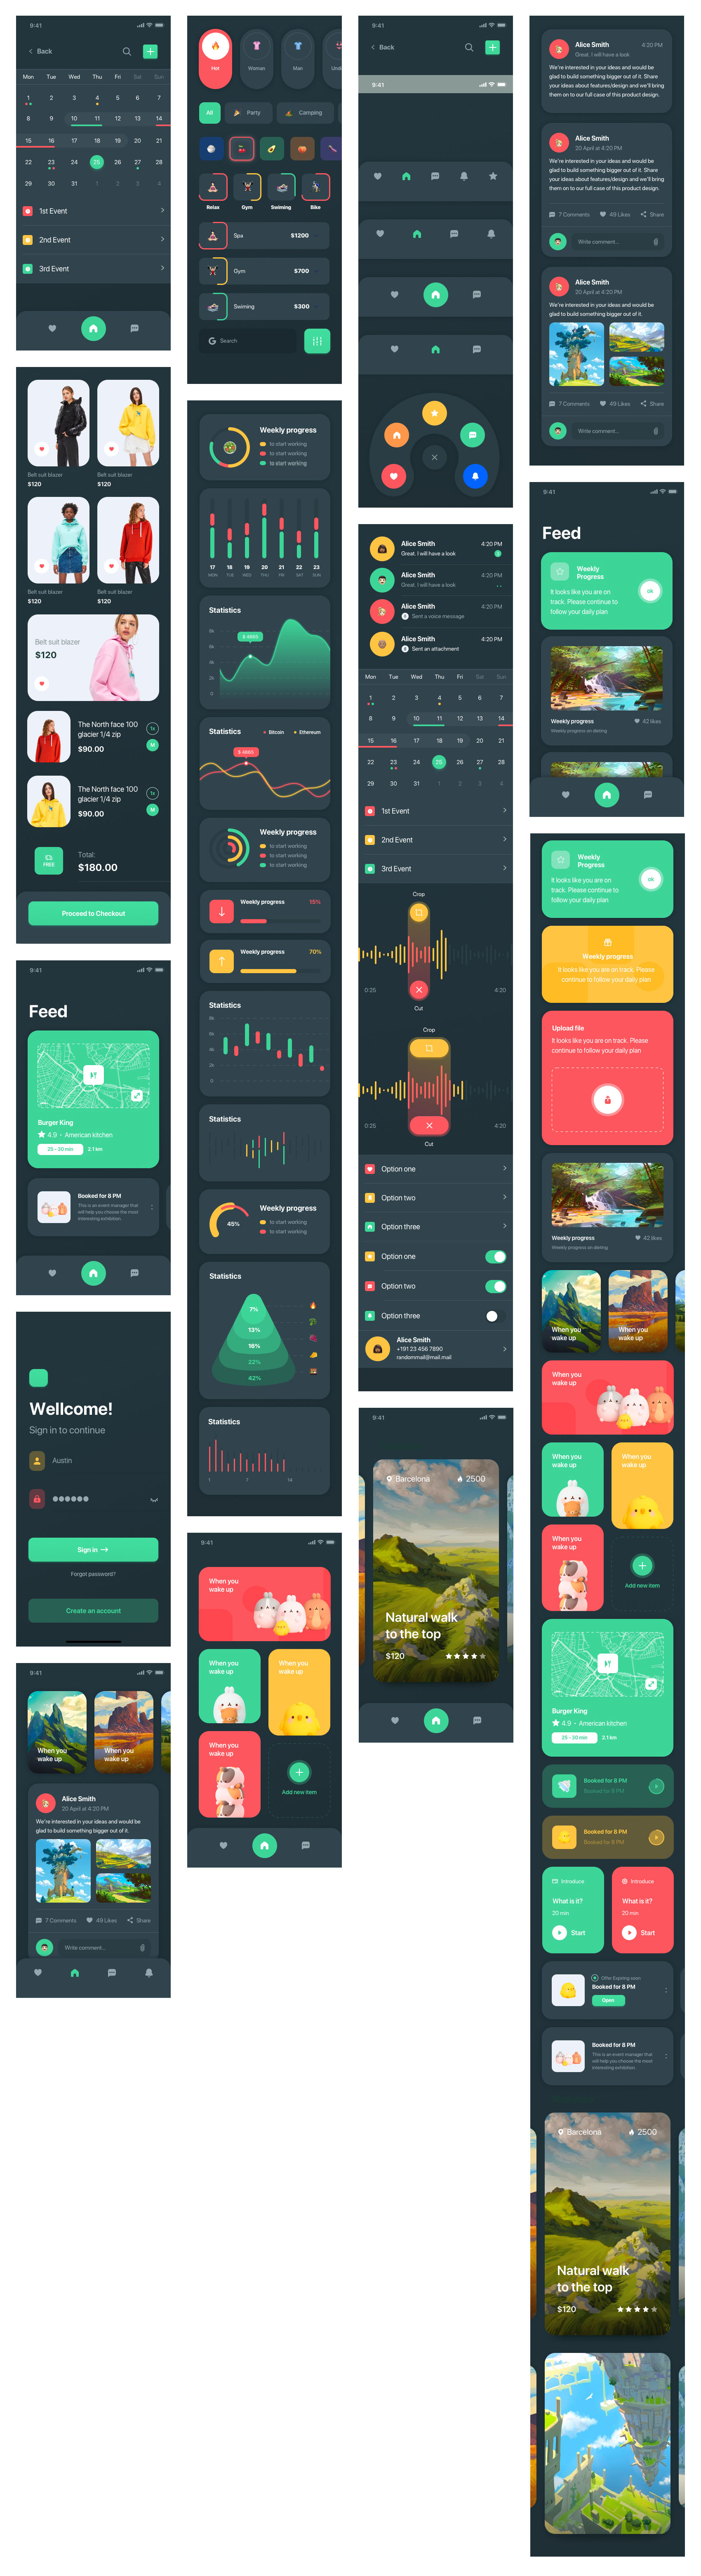 时尚墨绿色系多用途App界面设计UI设计 .sketch素材包